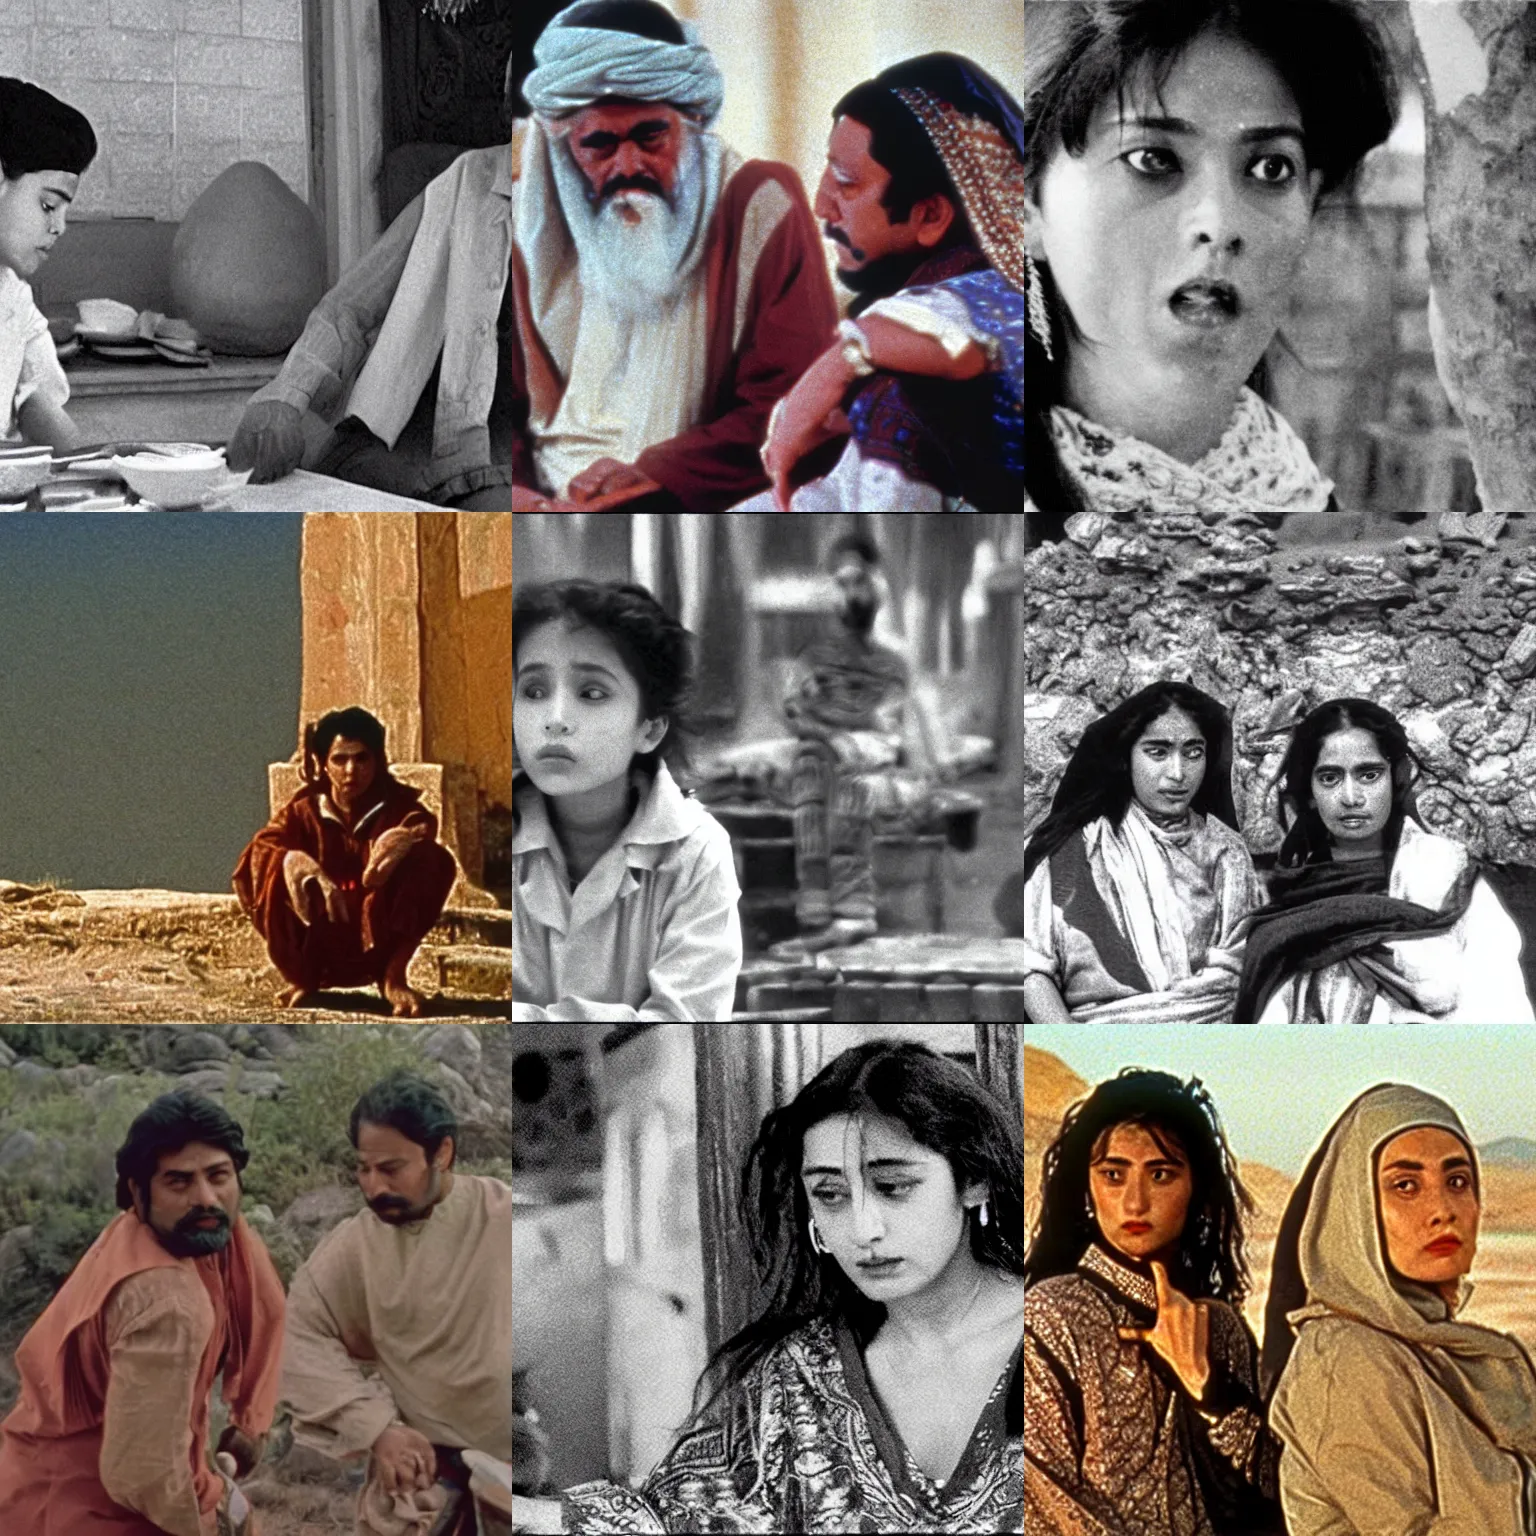 Prompt: a film still from naqoyqatsi ( 1 9 8 8 )